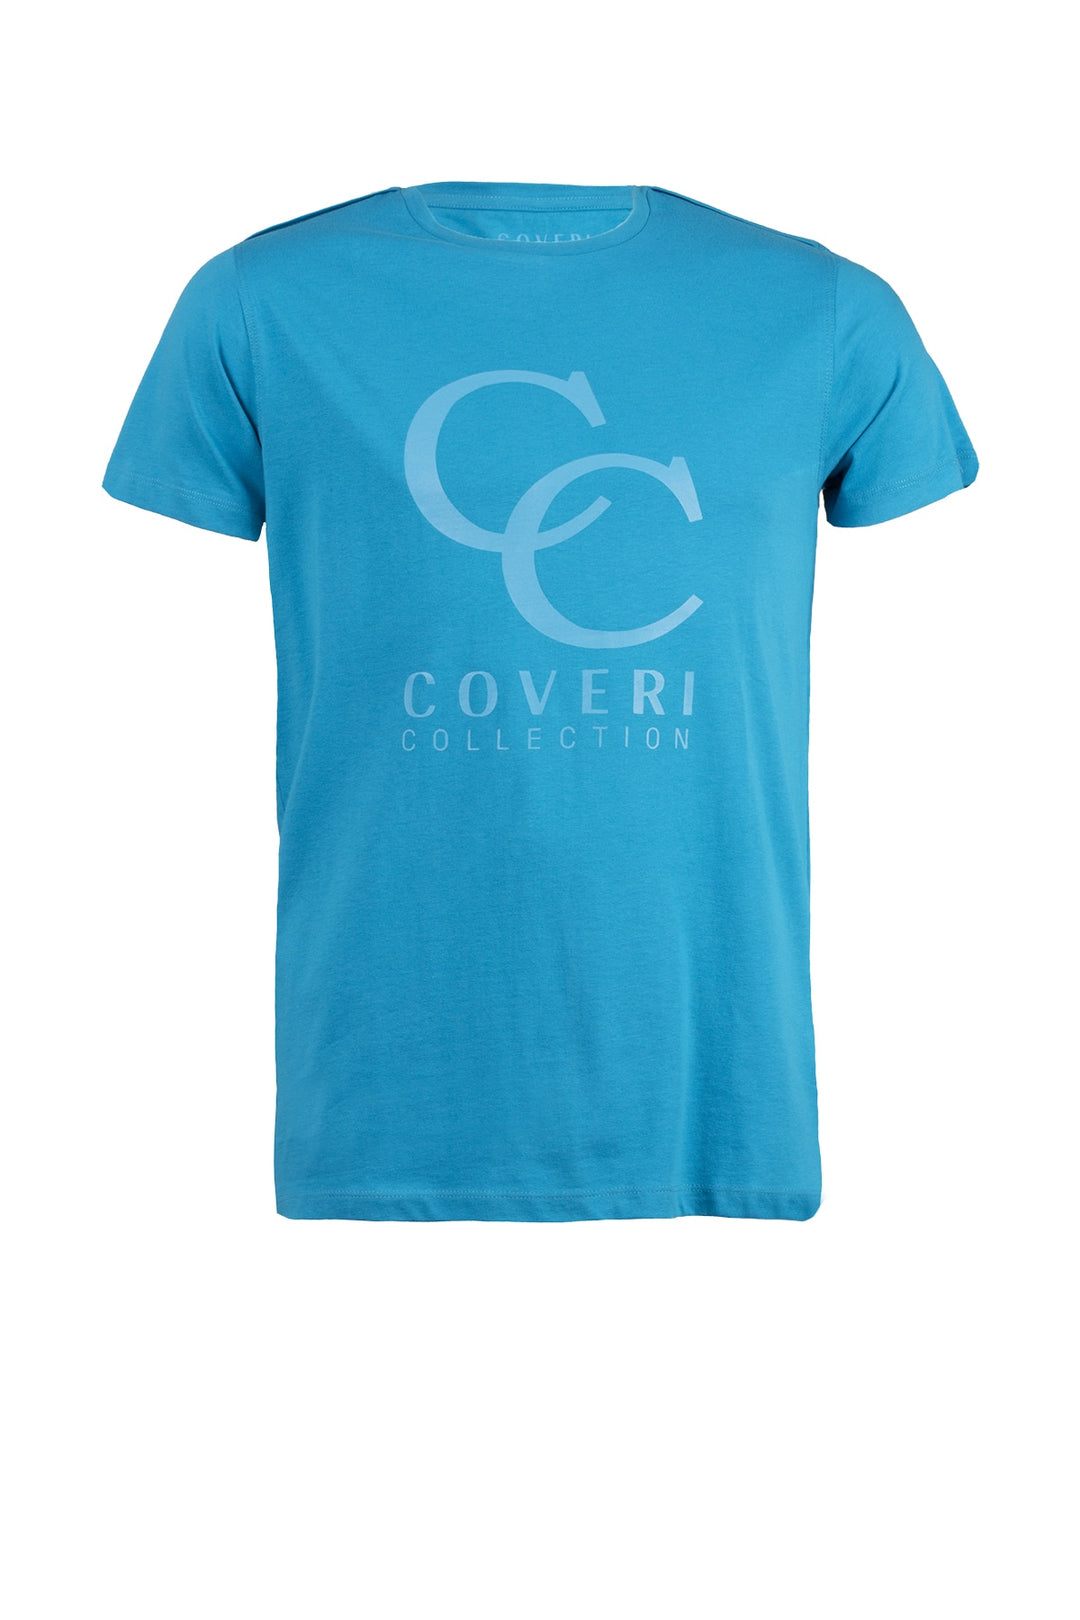 T-shirt uomo in cotone con maxi stampa Coveri Collection